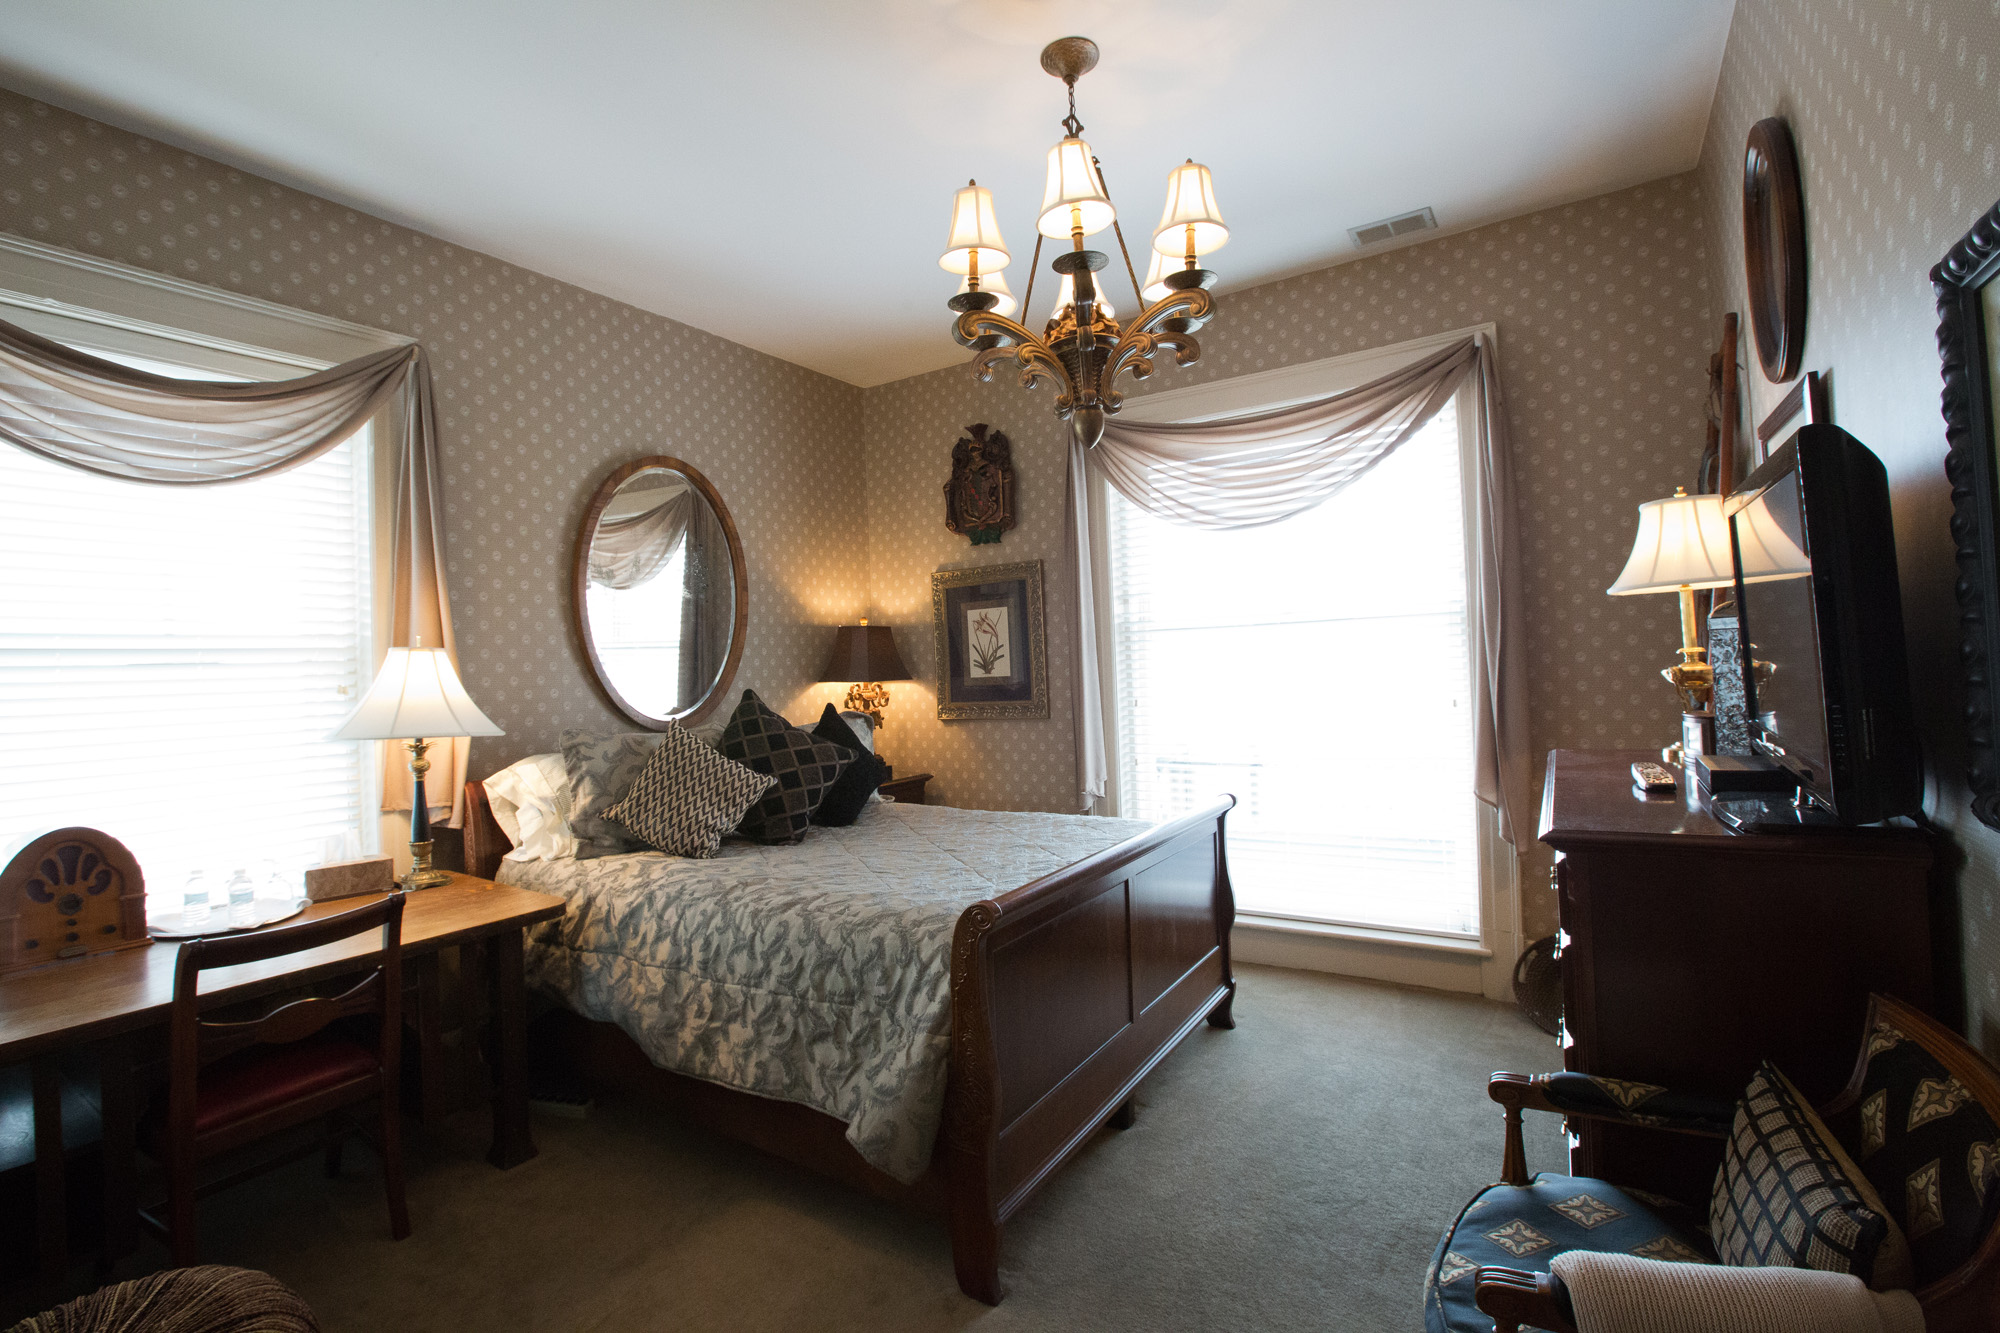  Room 4 - Single Queen Bedroom - $150 per night&nbsp; 